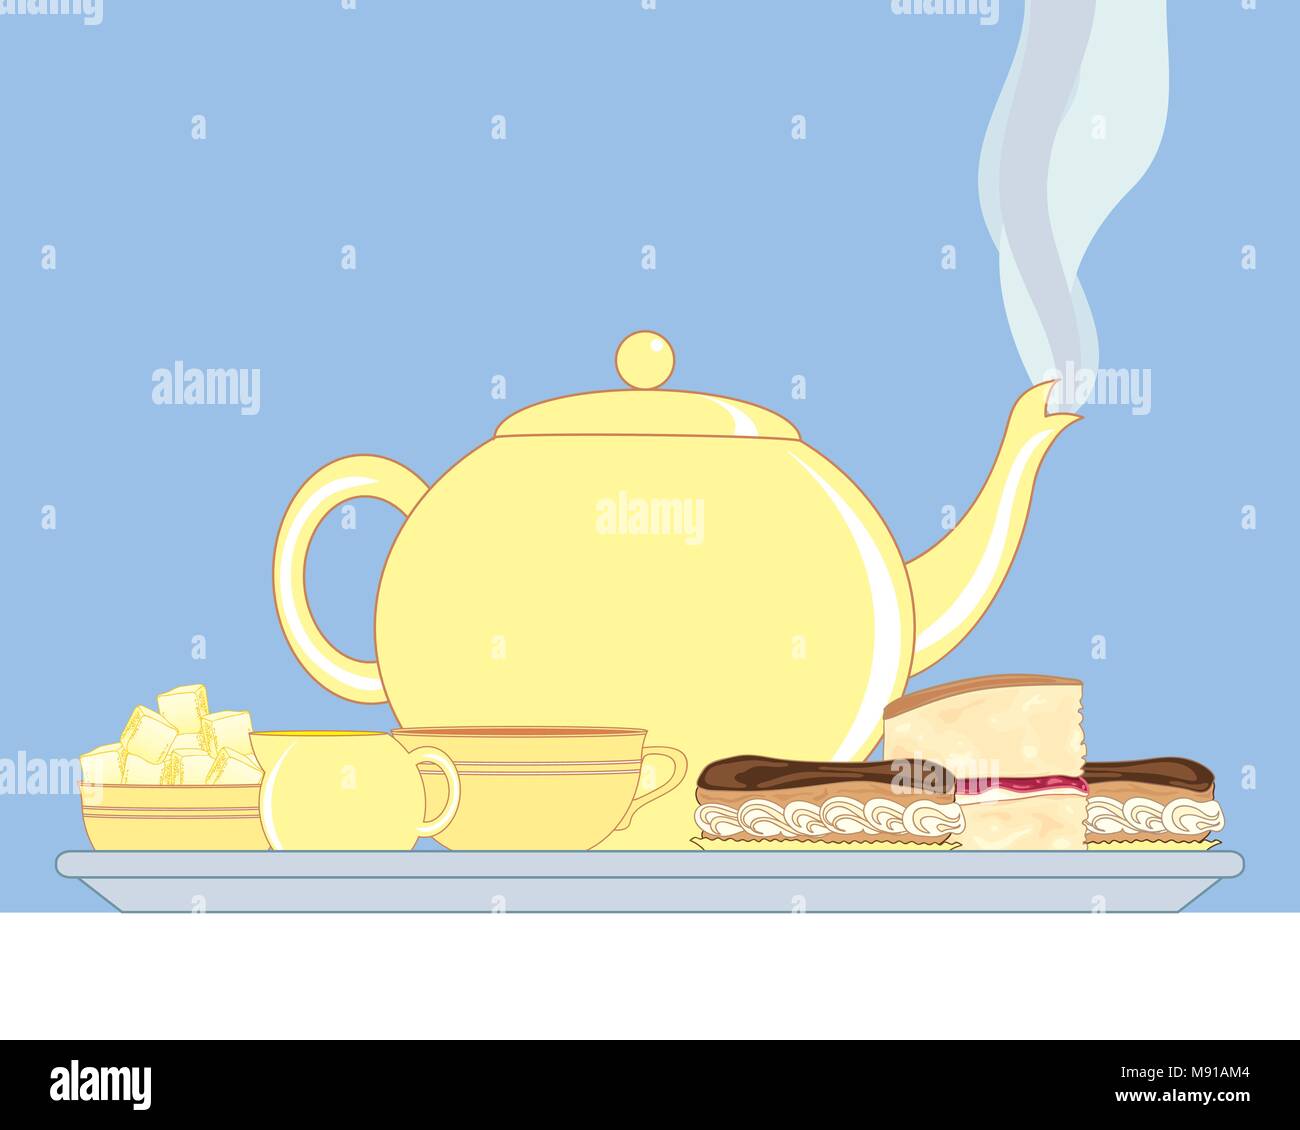 Un vecteur illustration en eps 10 format d'un plateau avec une théière fumante pot à lait sucrier tasse et de délicieux gâteaux sur une nappe blanche Illustration de Vecteur